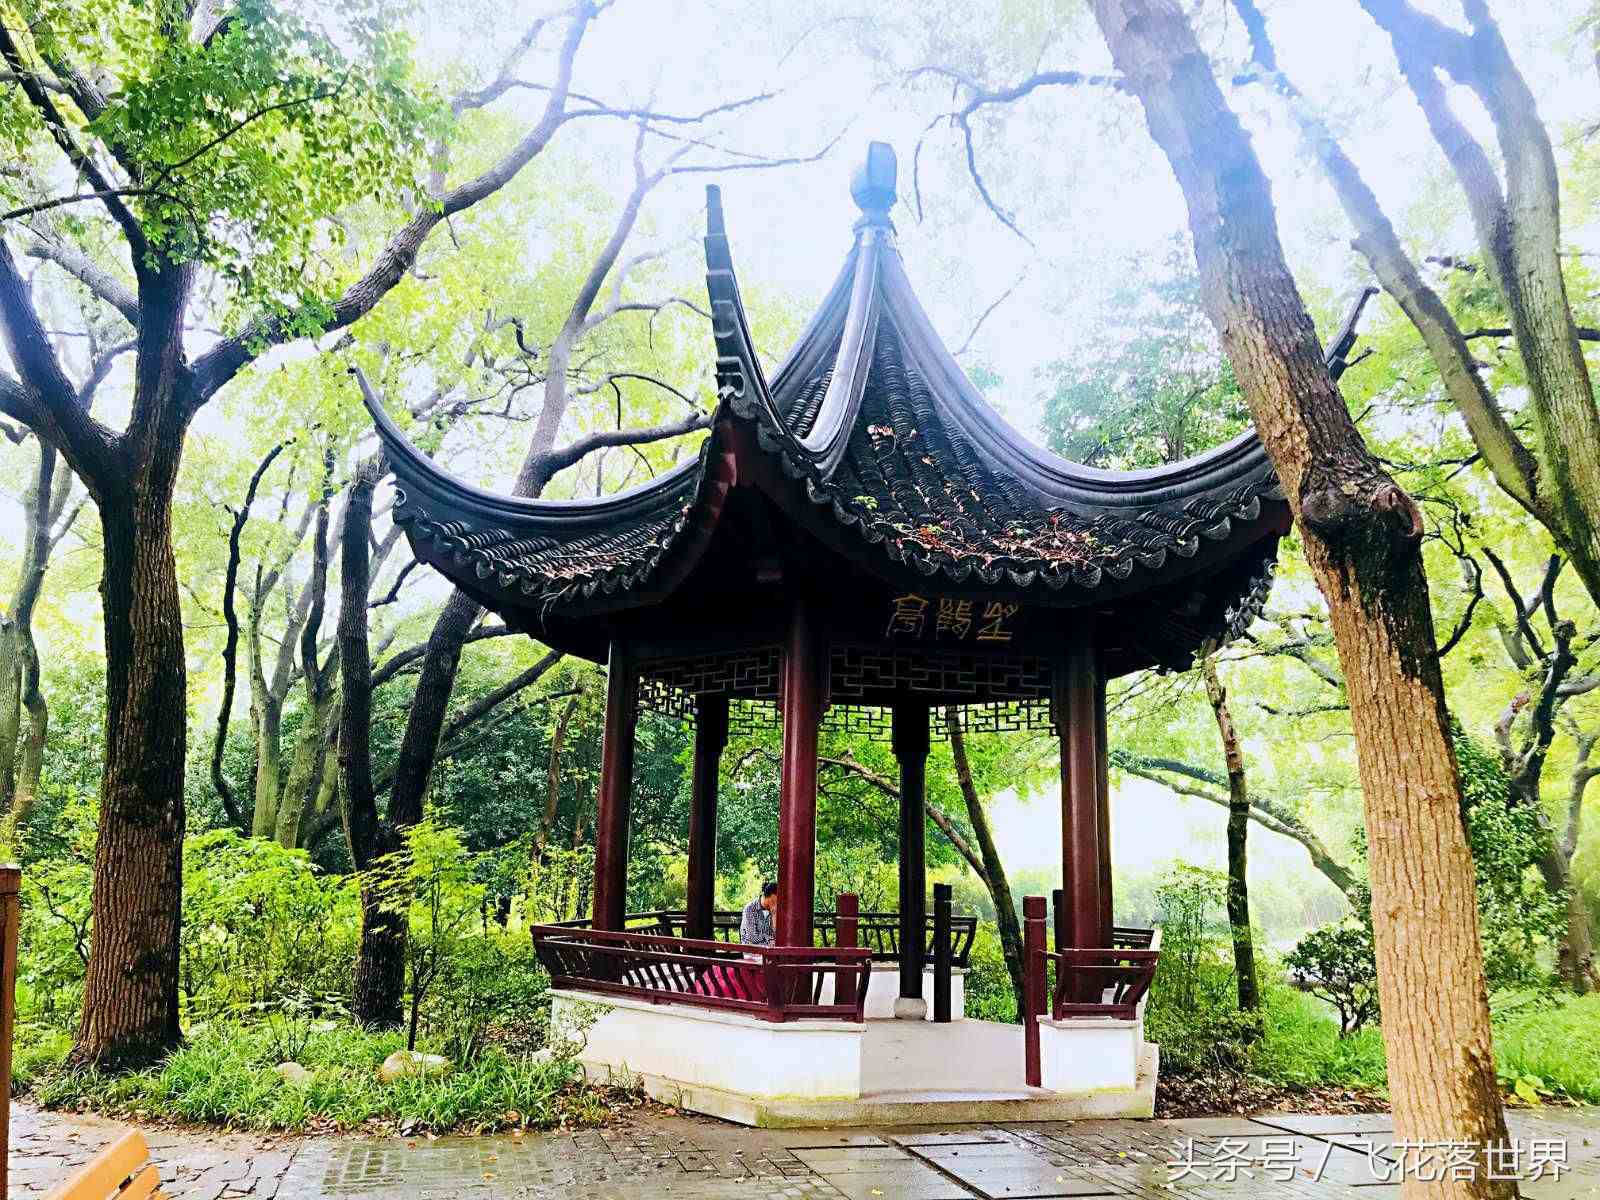 上海市松江区有一座少有游客前往的4A级景区方塔园，有故事的园林